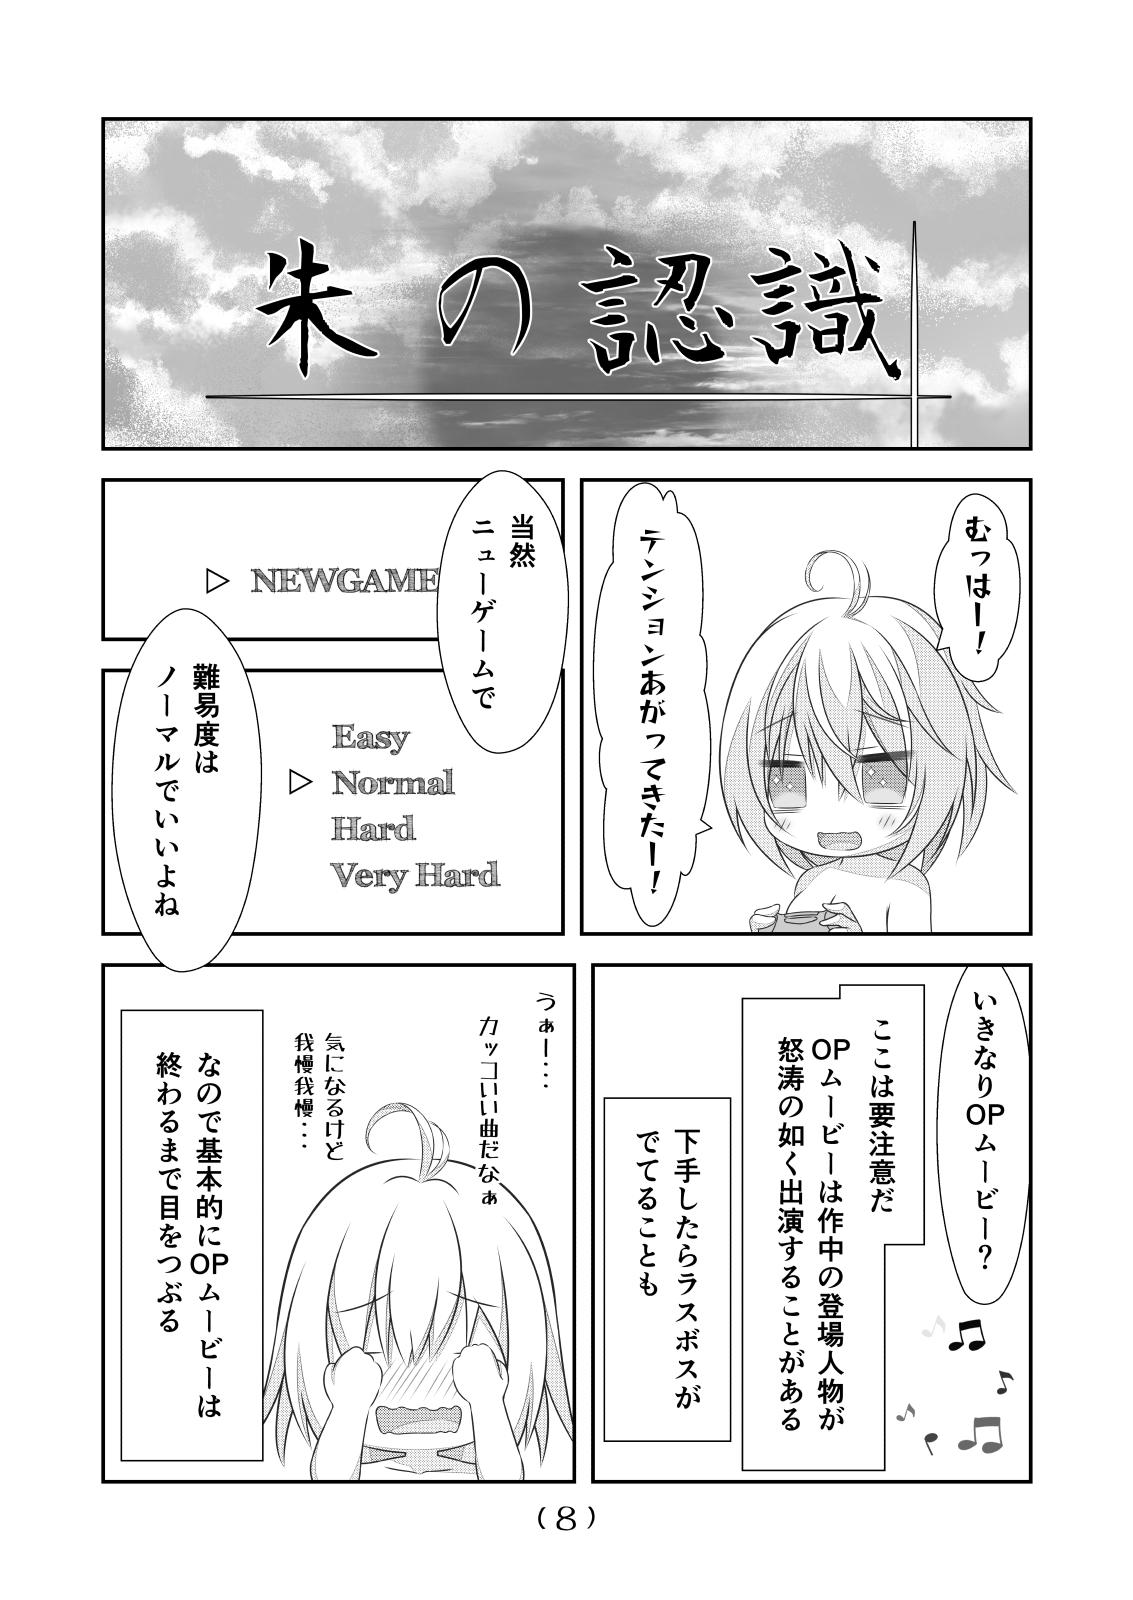 Gape Nyotaika Cheat ga Souzou Ijou ni Bannou Sugita Sono 16 - Original Yanks Featured - Page 10